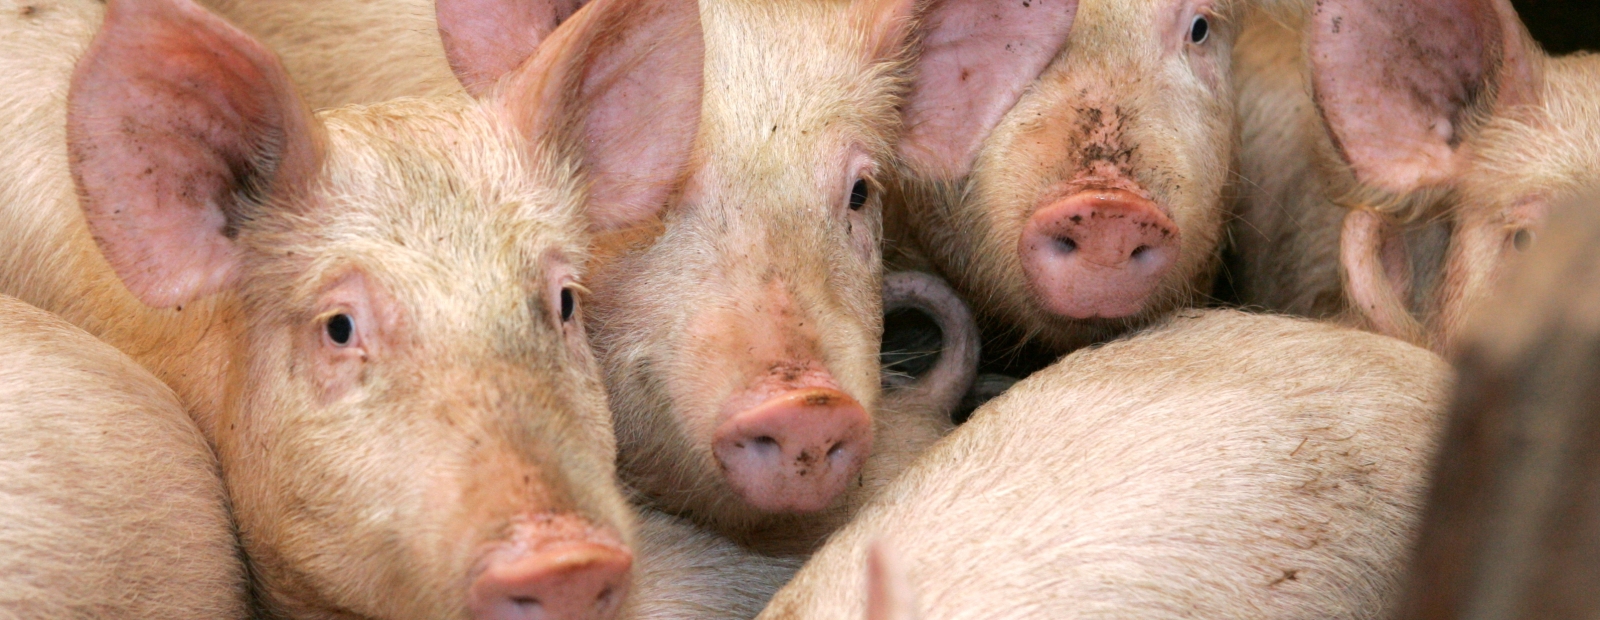 Среди свиней. Африканская чума свиней эпизоотология. Свиньи. Стадо свиней. КРС свиньи.